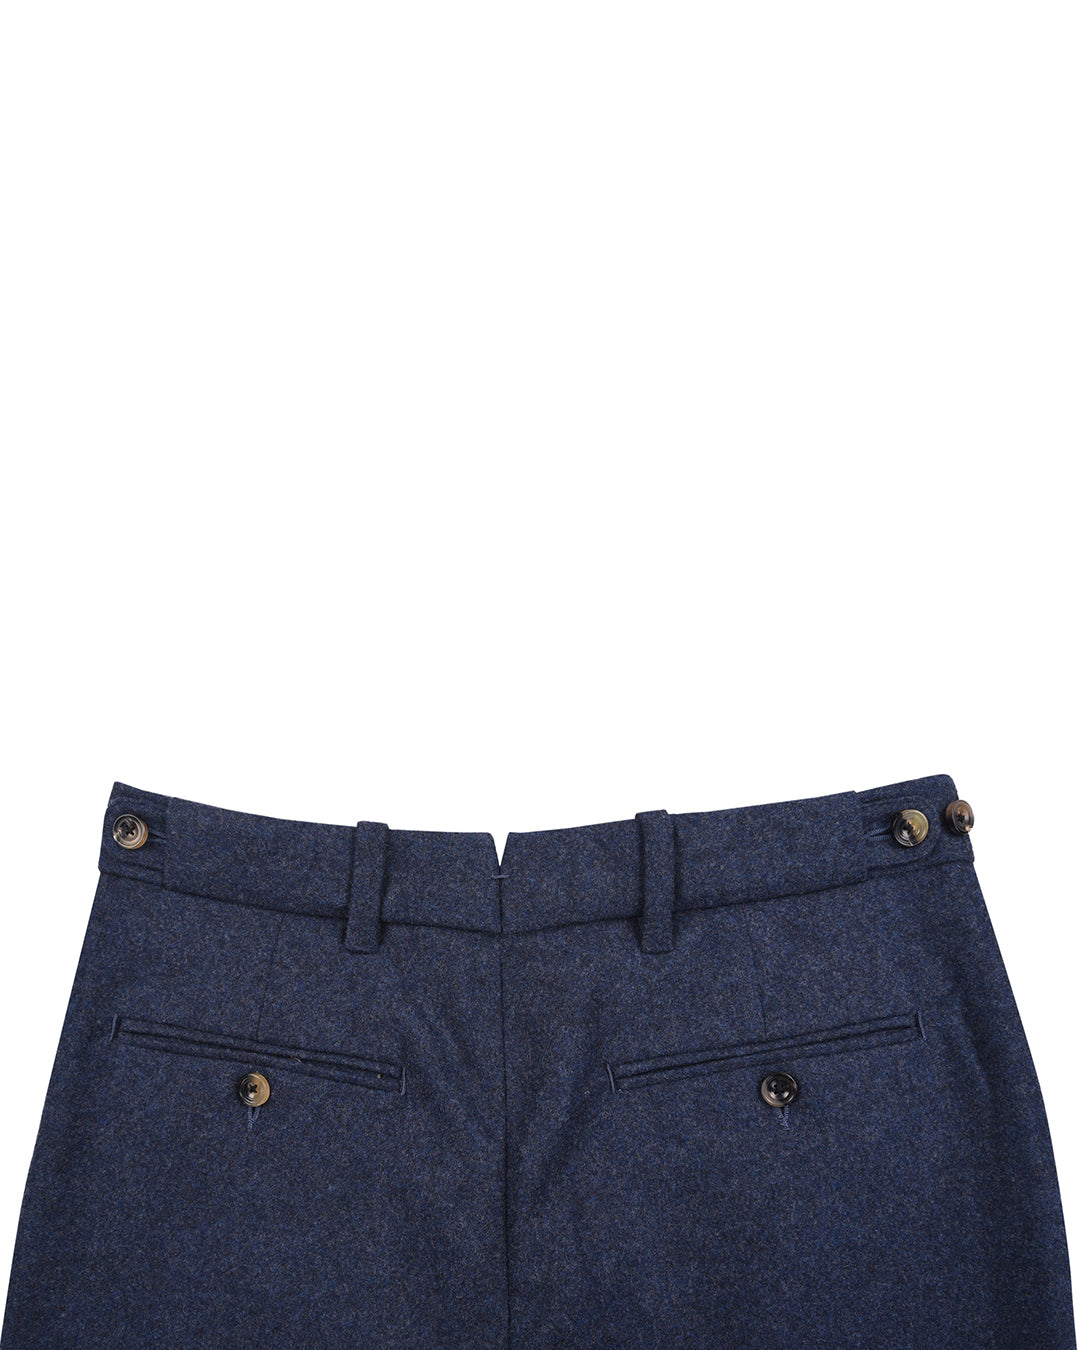 Minnis Flannel: Blue Twill Pants